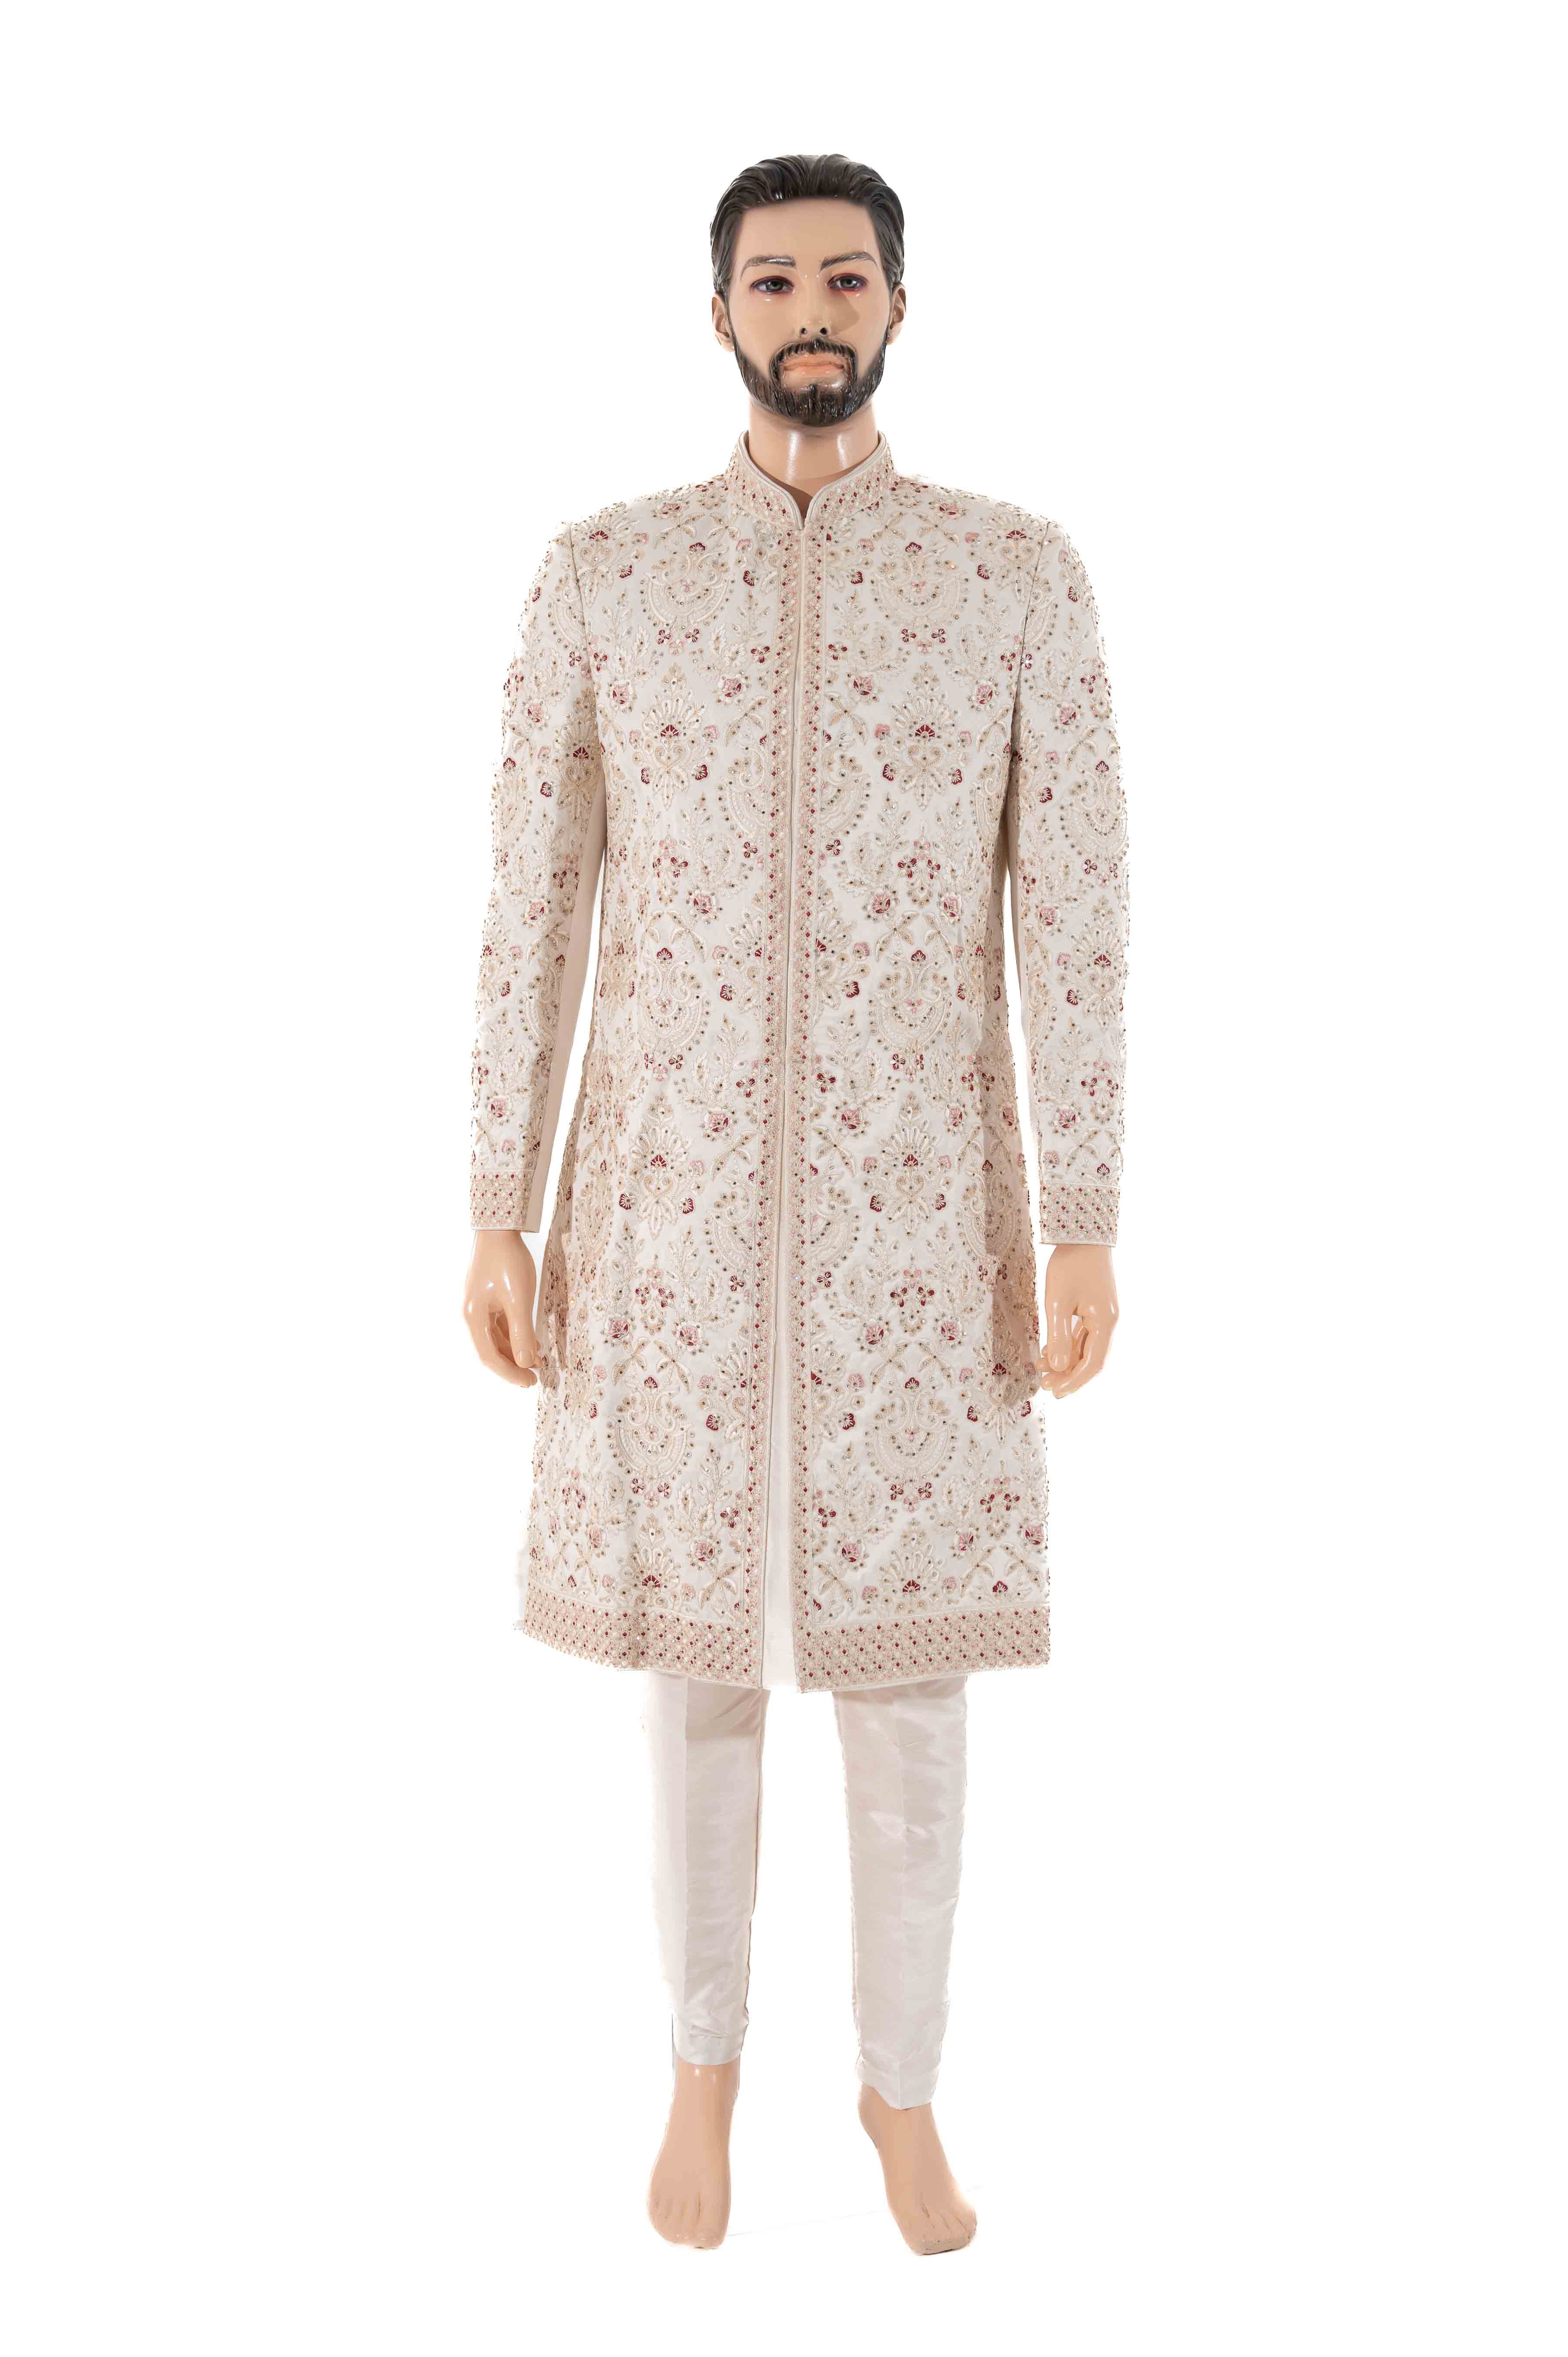 Classic Cream Plain Sherwani Dress for Groom – Karveer Creation